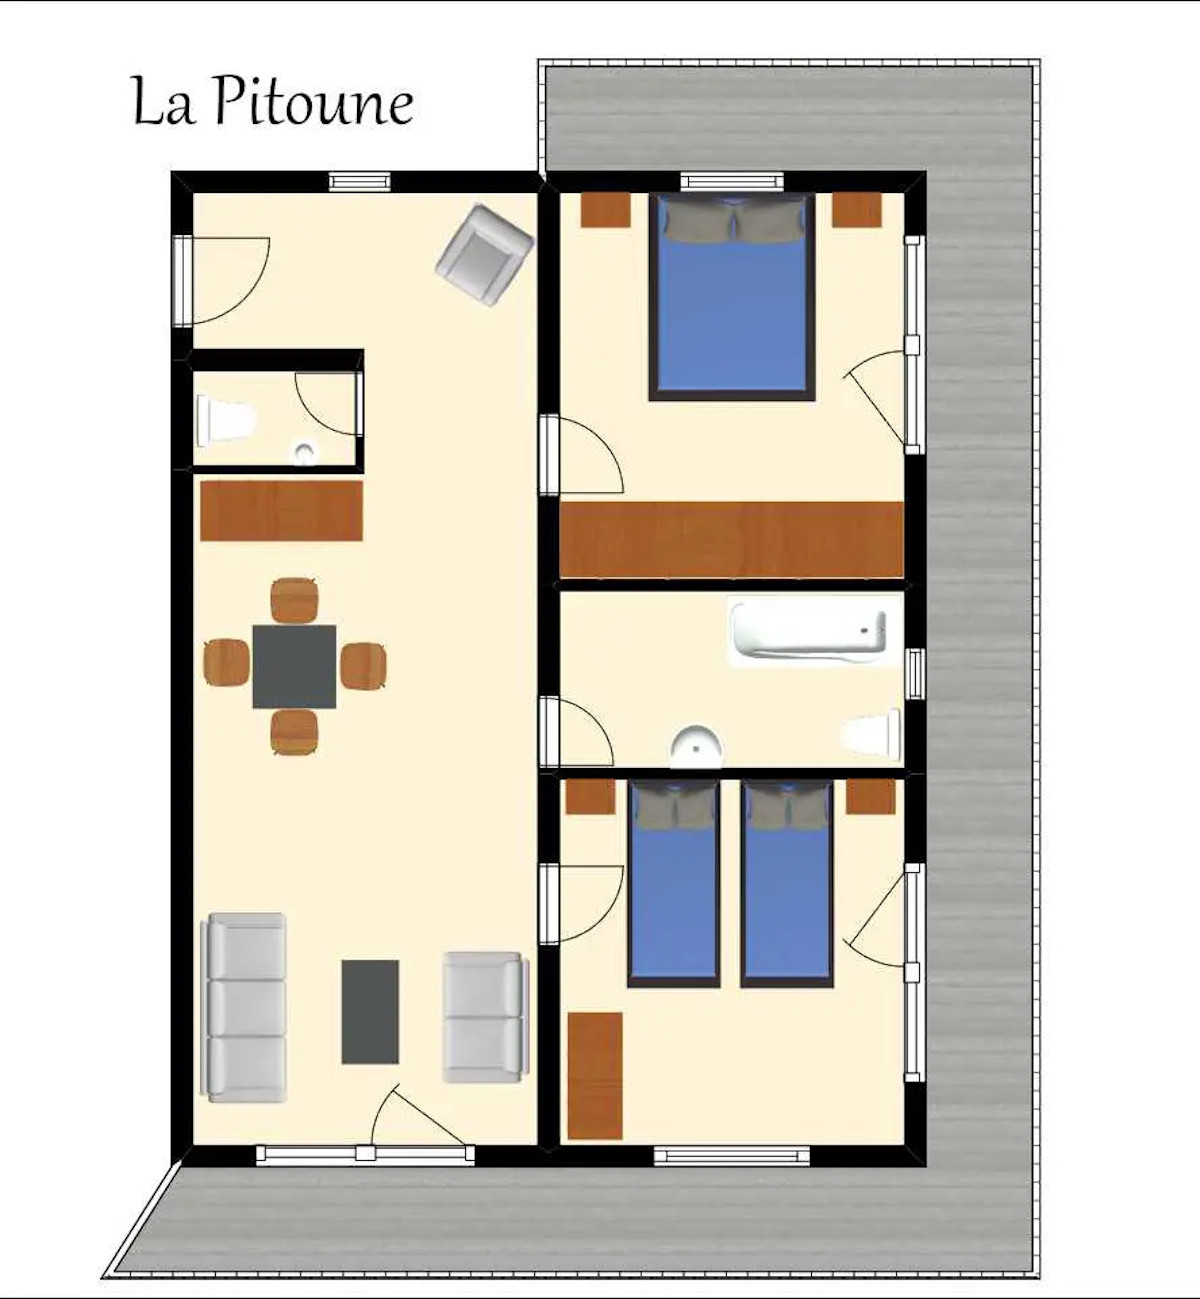 Suite La Pitoune